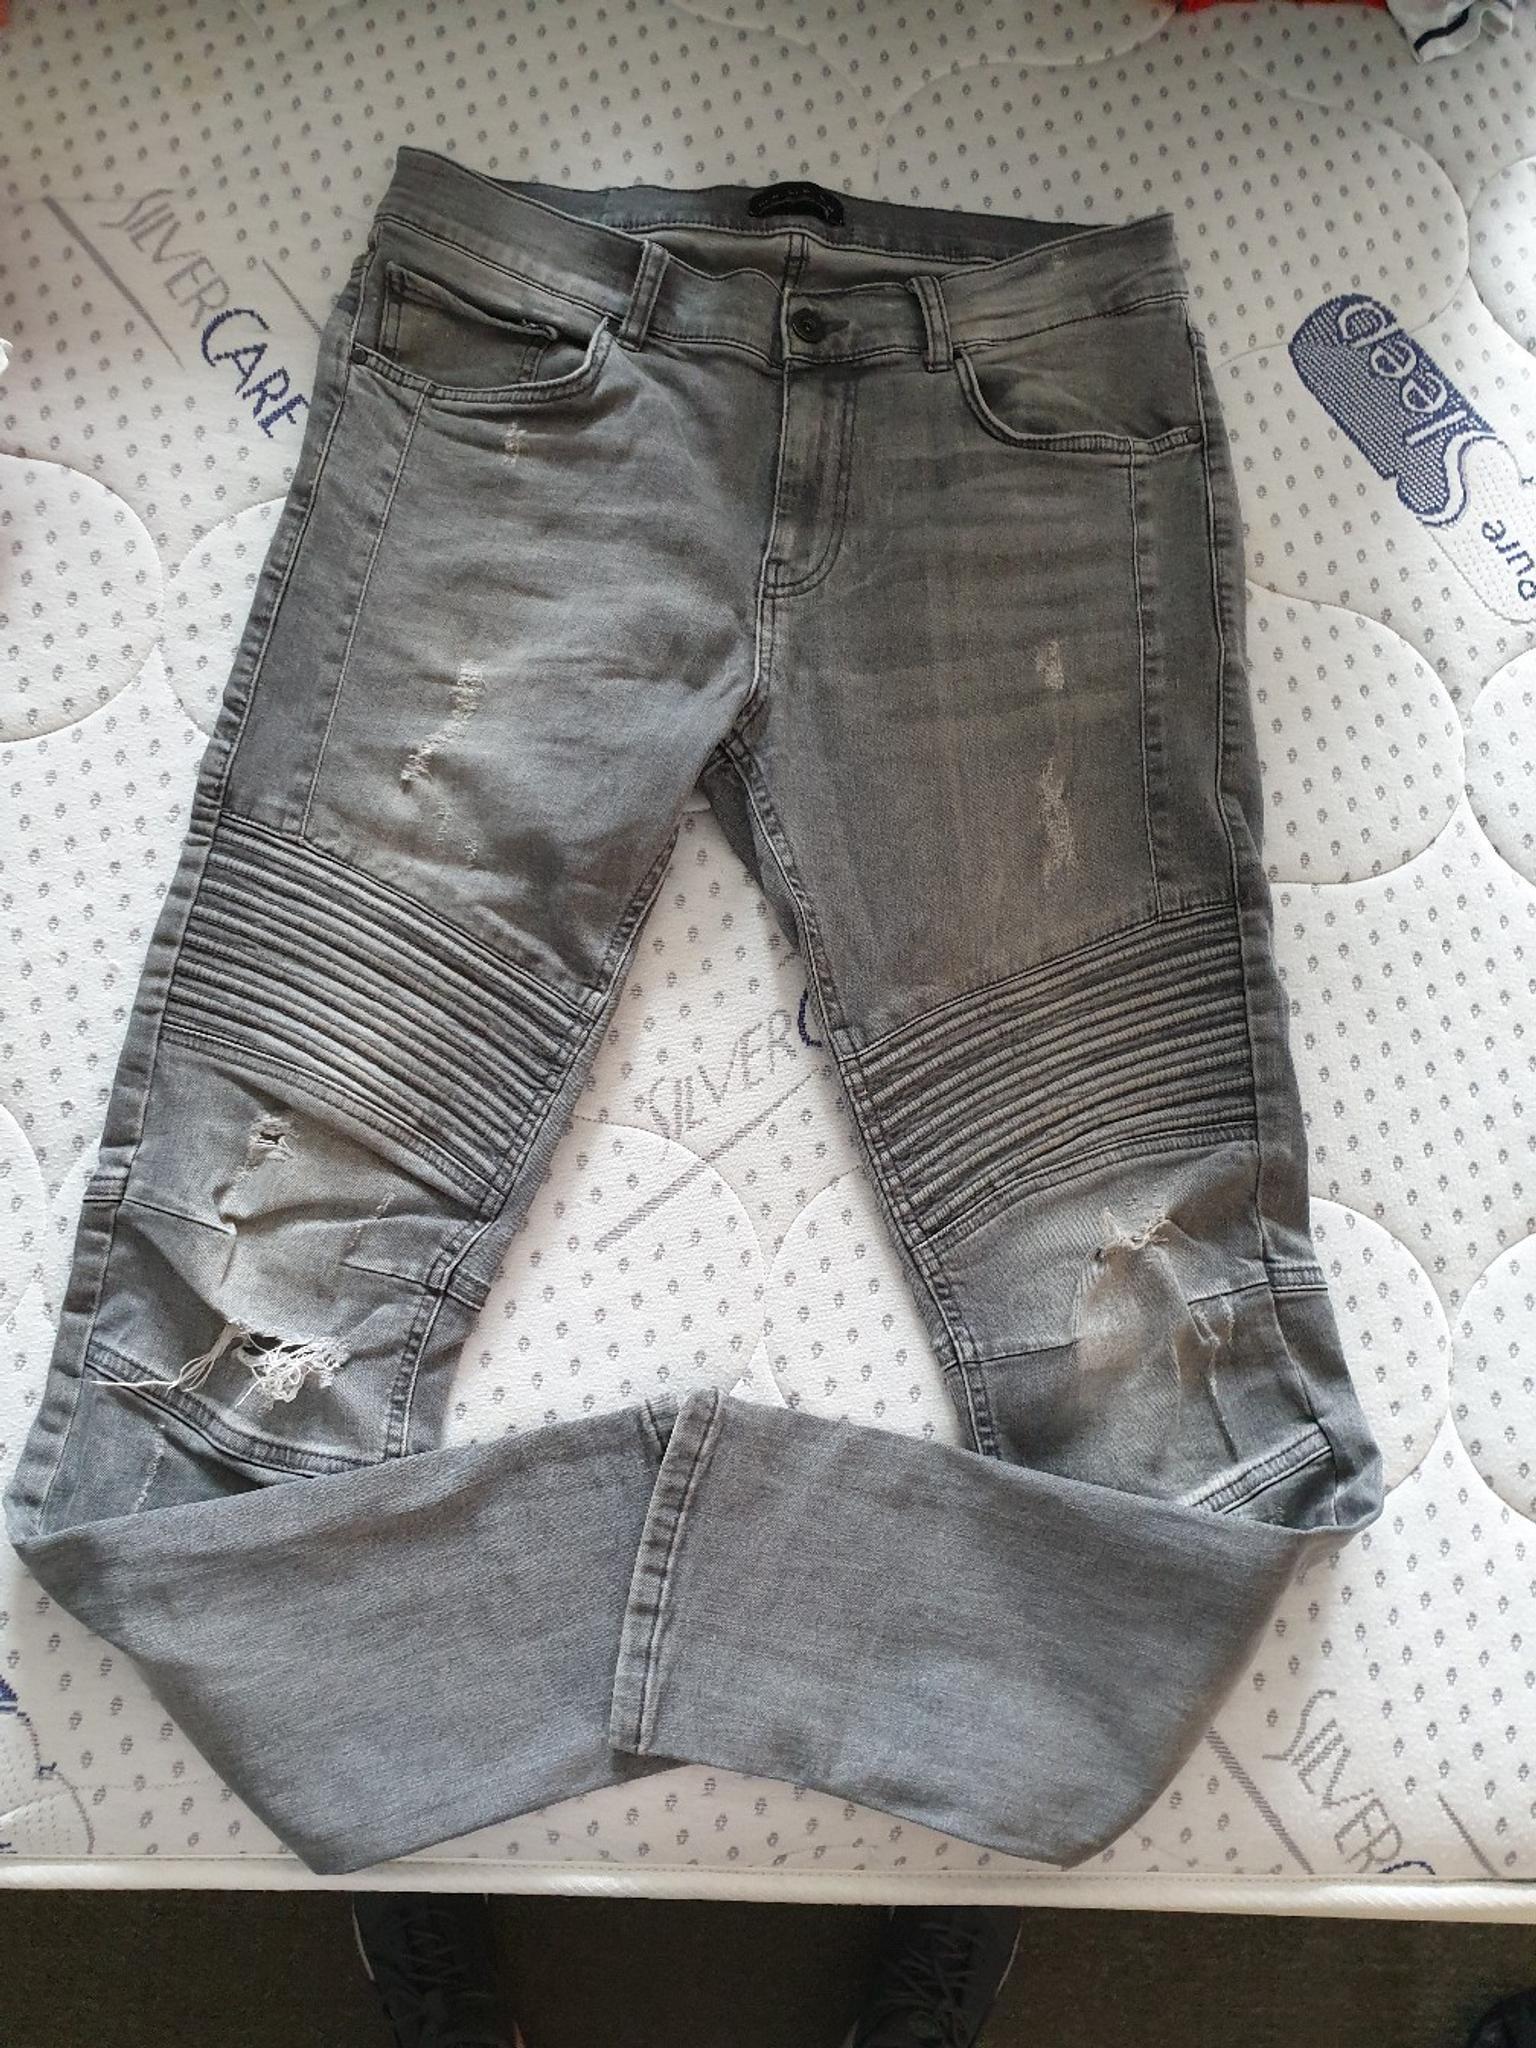 Zara biker jeans in TW13 London for £10 